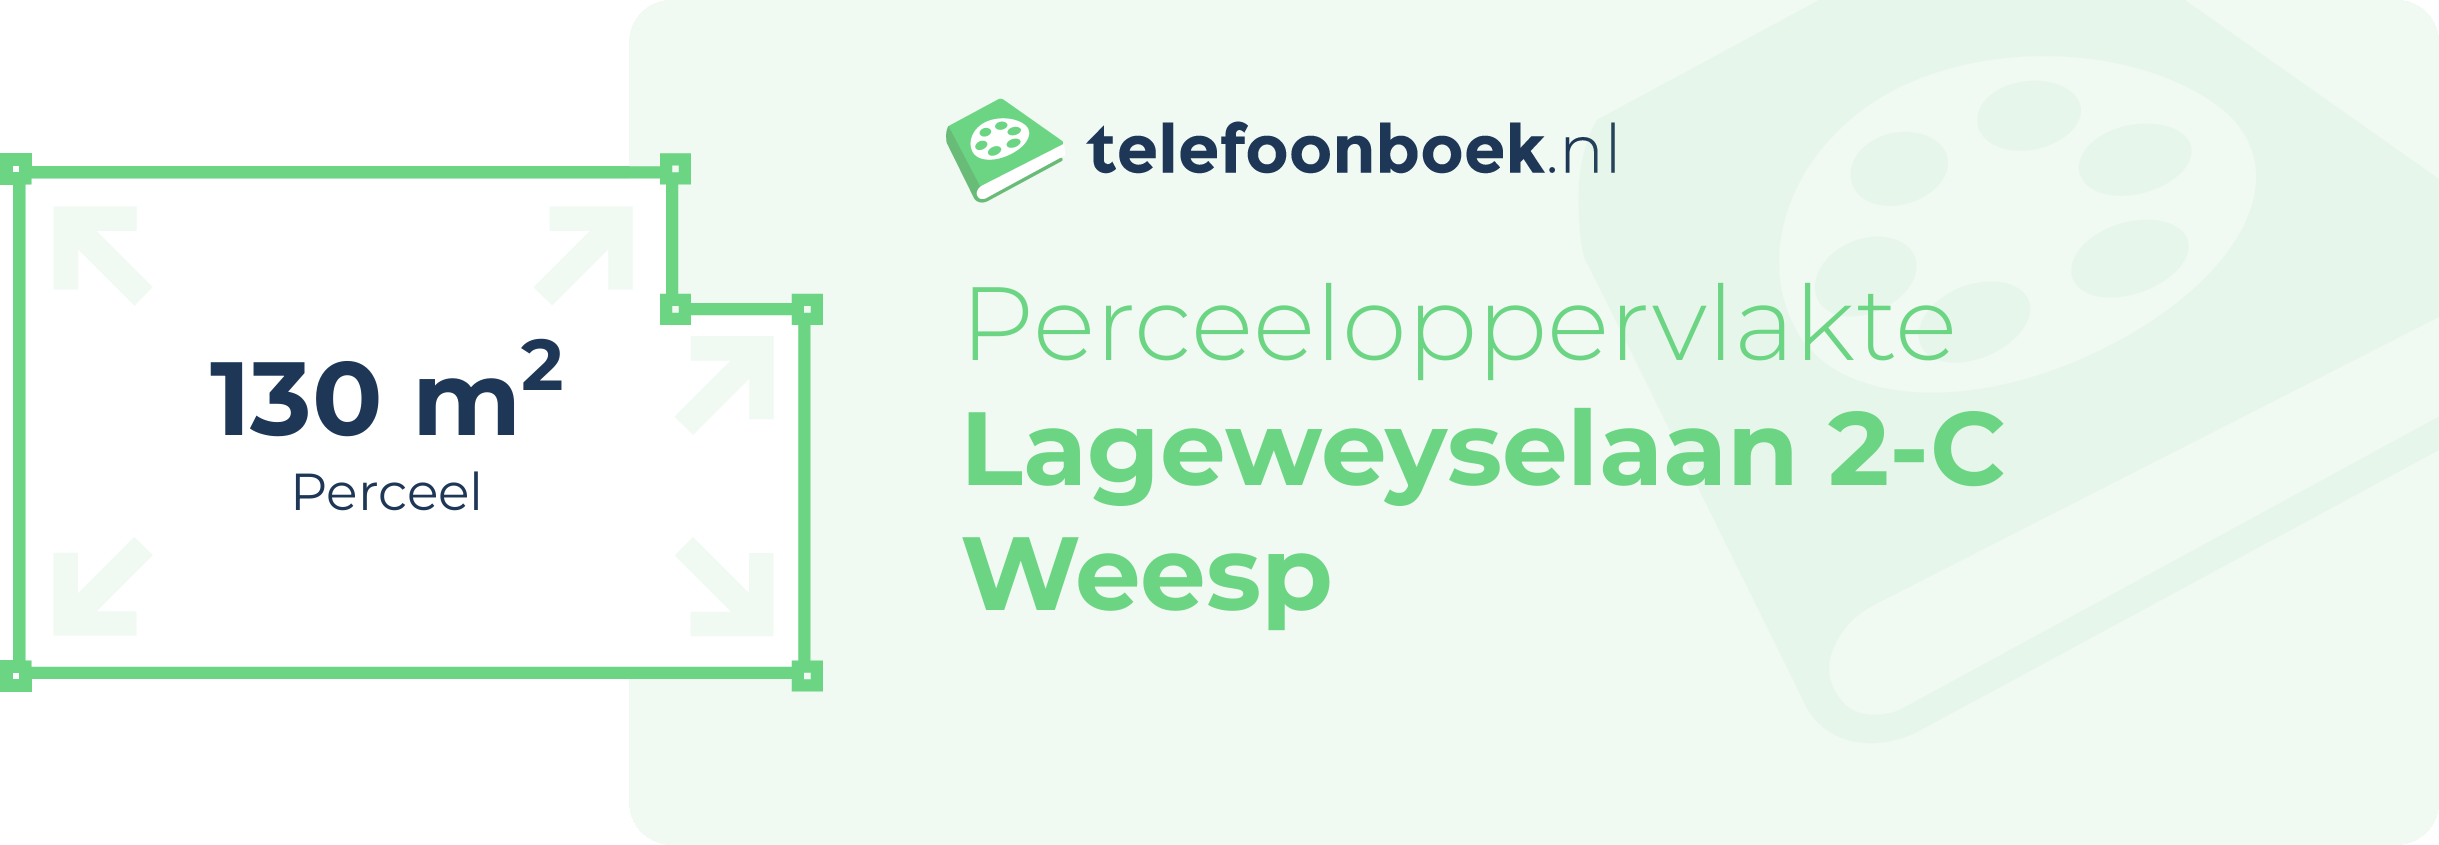 Perceeloppervlakte Lageweyselaan 2-C Weesp